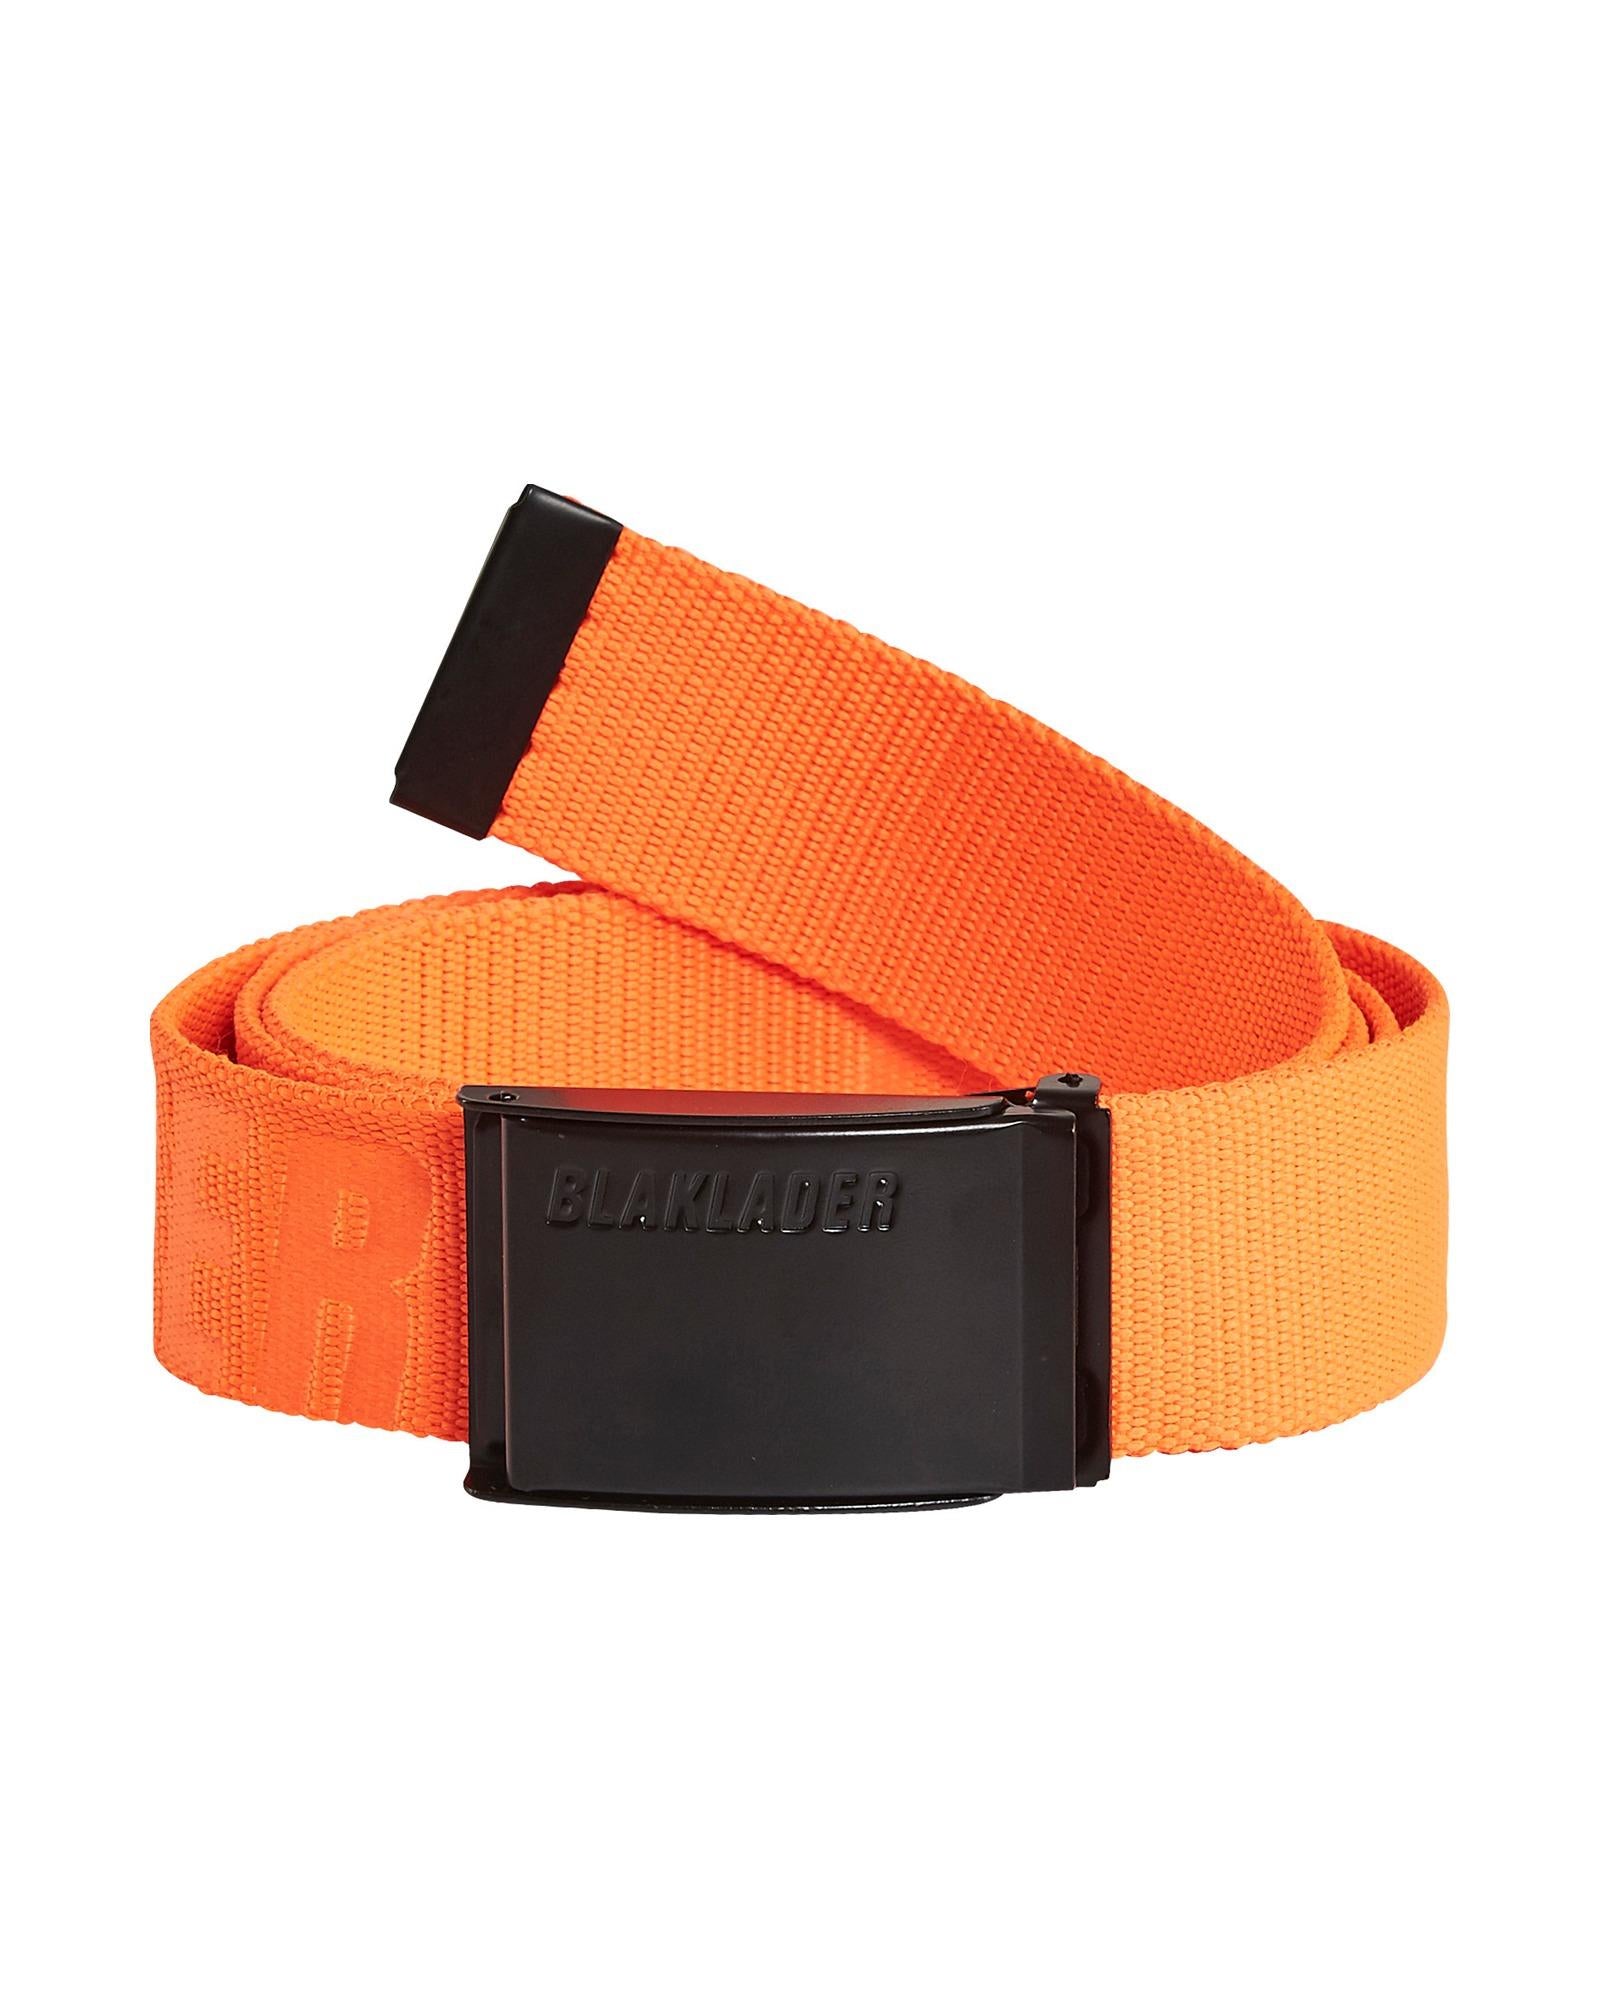 Blaklader orange textile adjustable belt with metal buckle #4034